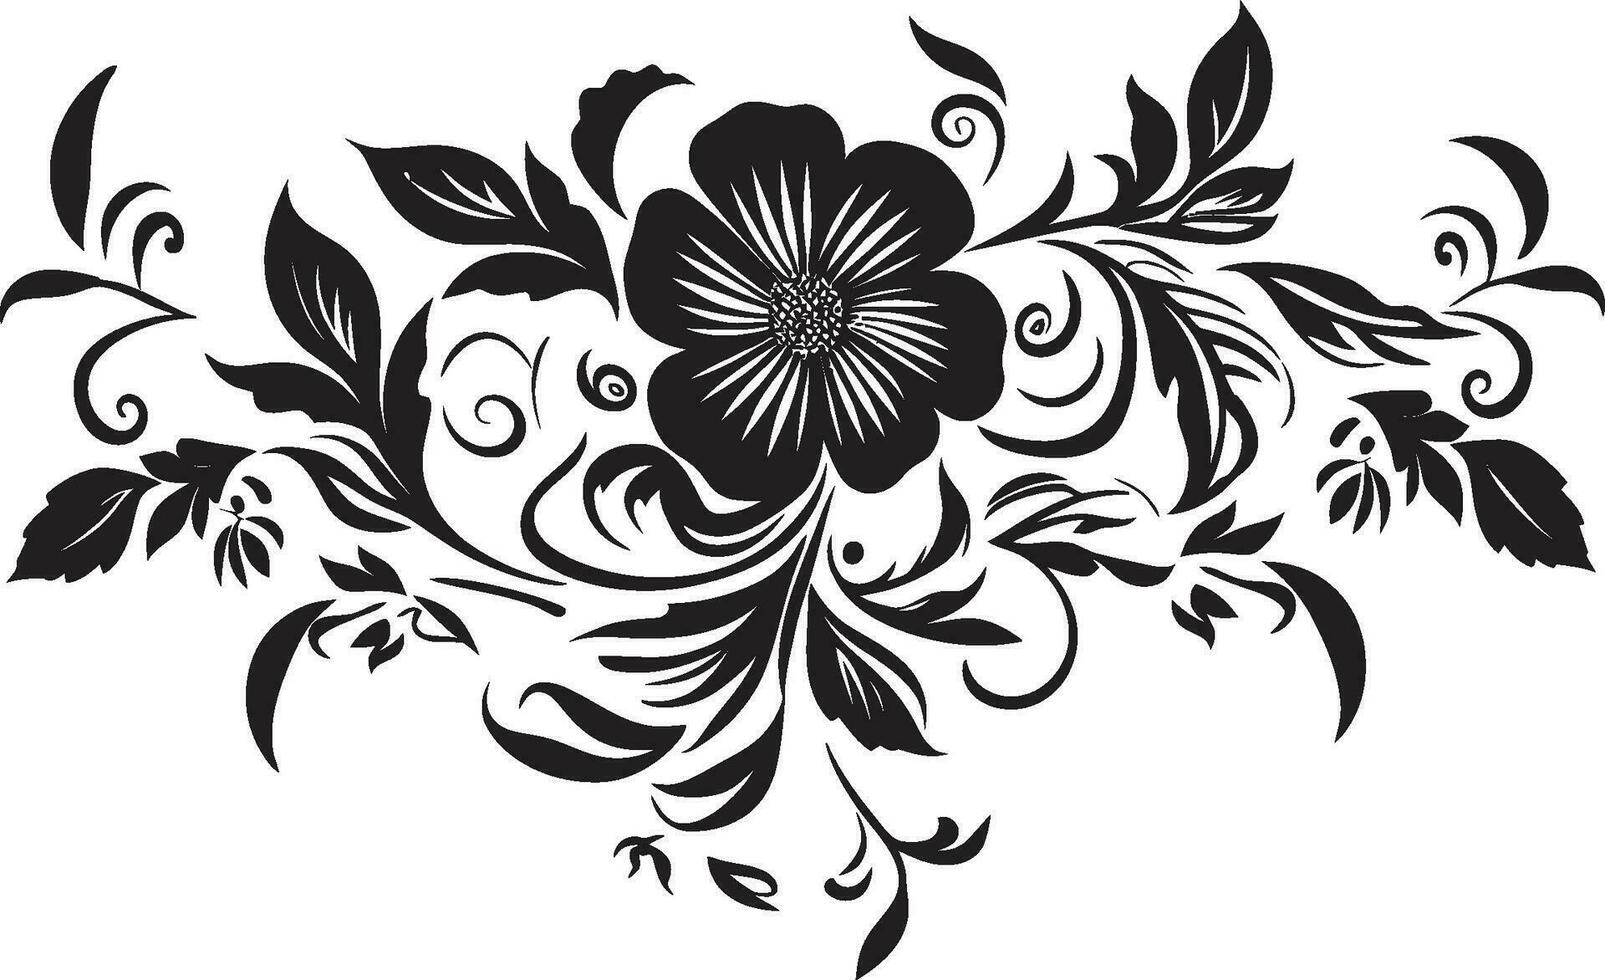 etéreo noir jardín temperamental mano dibujado vector íconos monocromo pétalo giro noir floral emblema bocetos